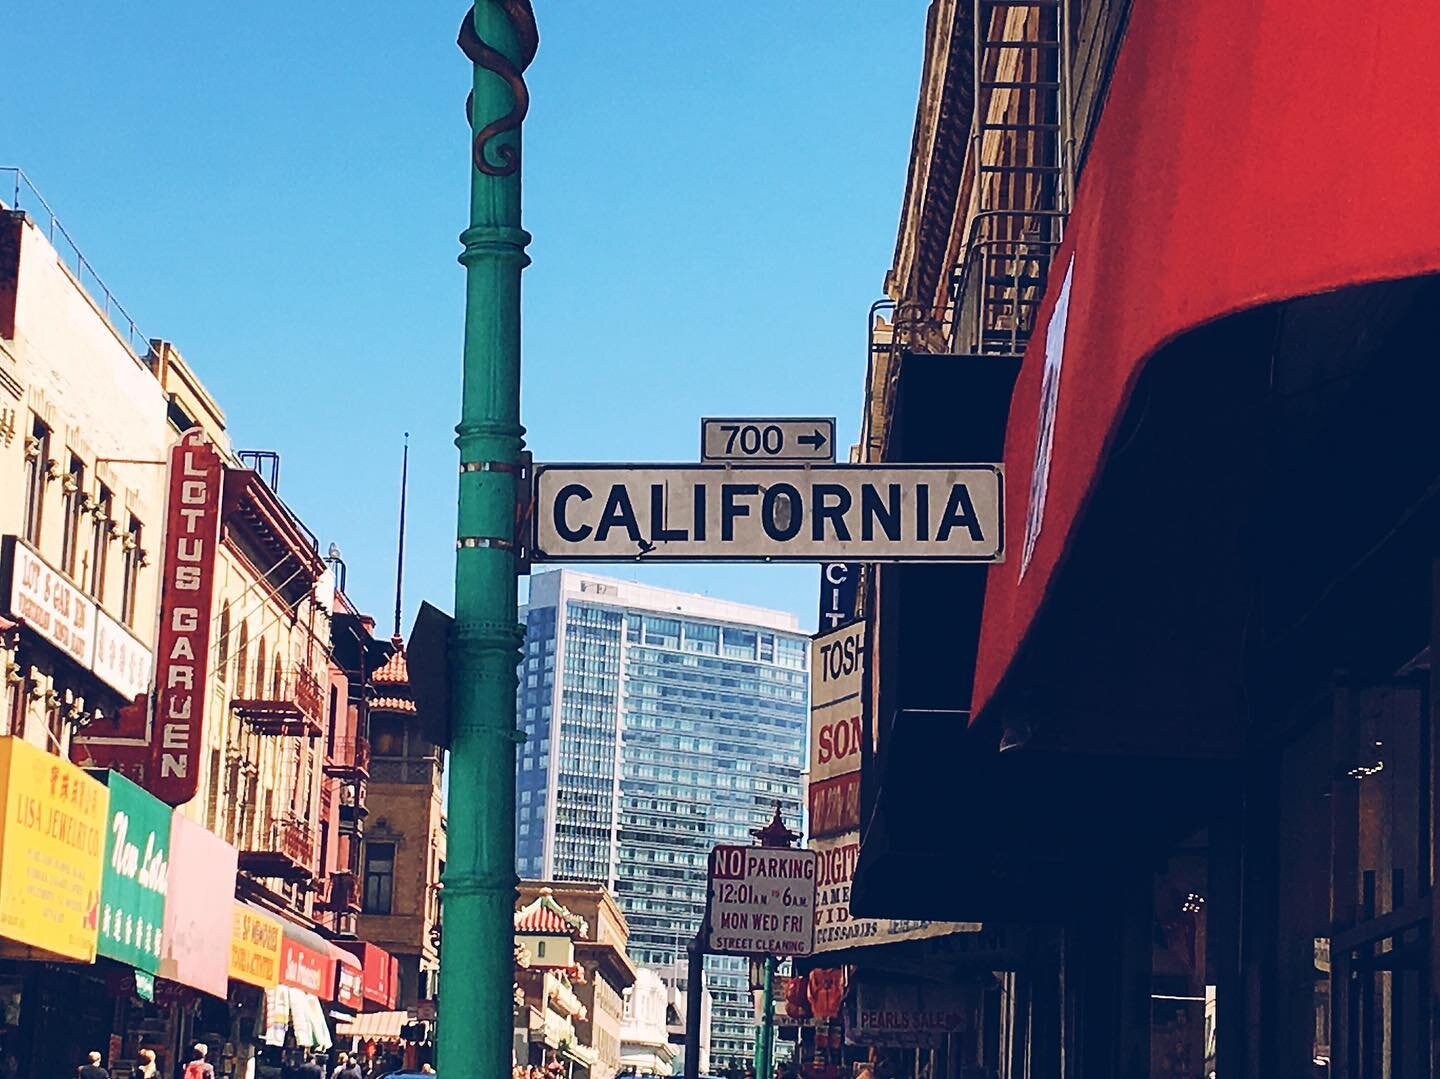 I miss California. Take me back☀️ #photography #photographer #photooftheday #sanfrancisco #sanfranciscophotography #california #californiaphotography #cityphotography #photos #summerphotography #photoshoot #oneyearago